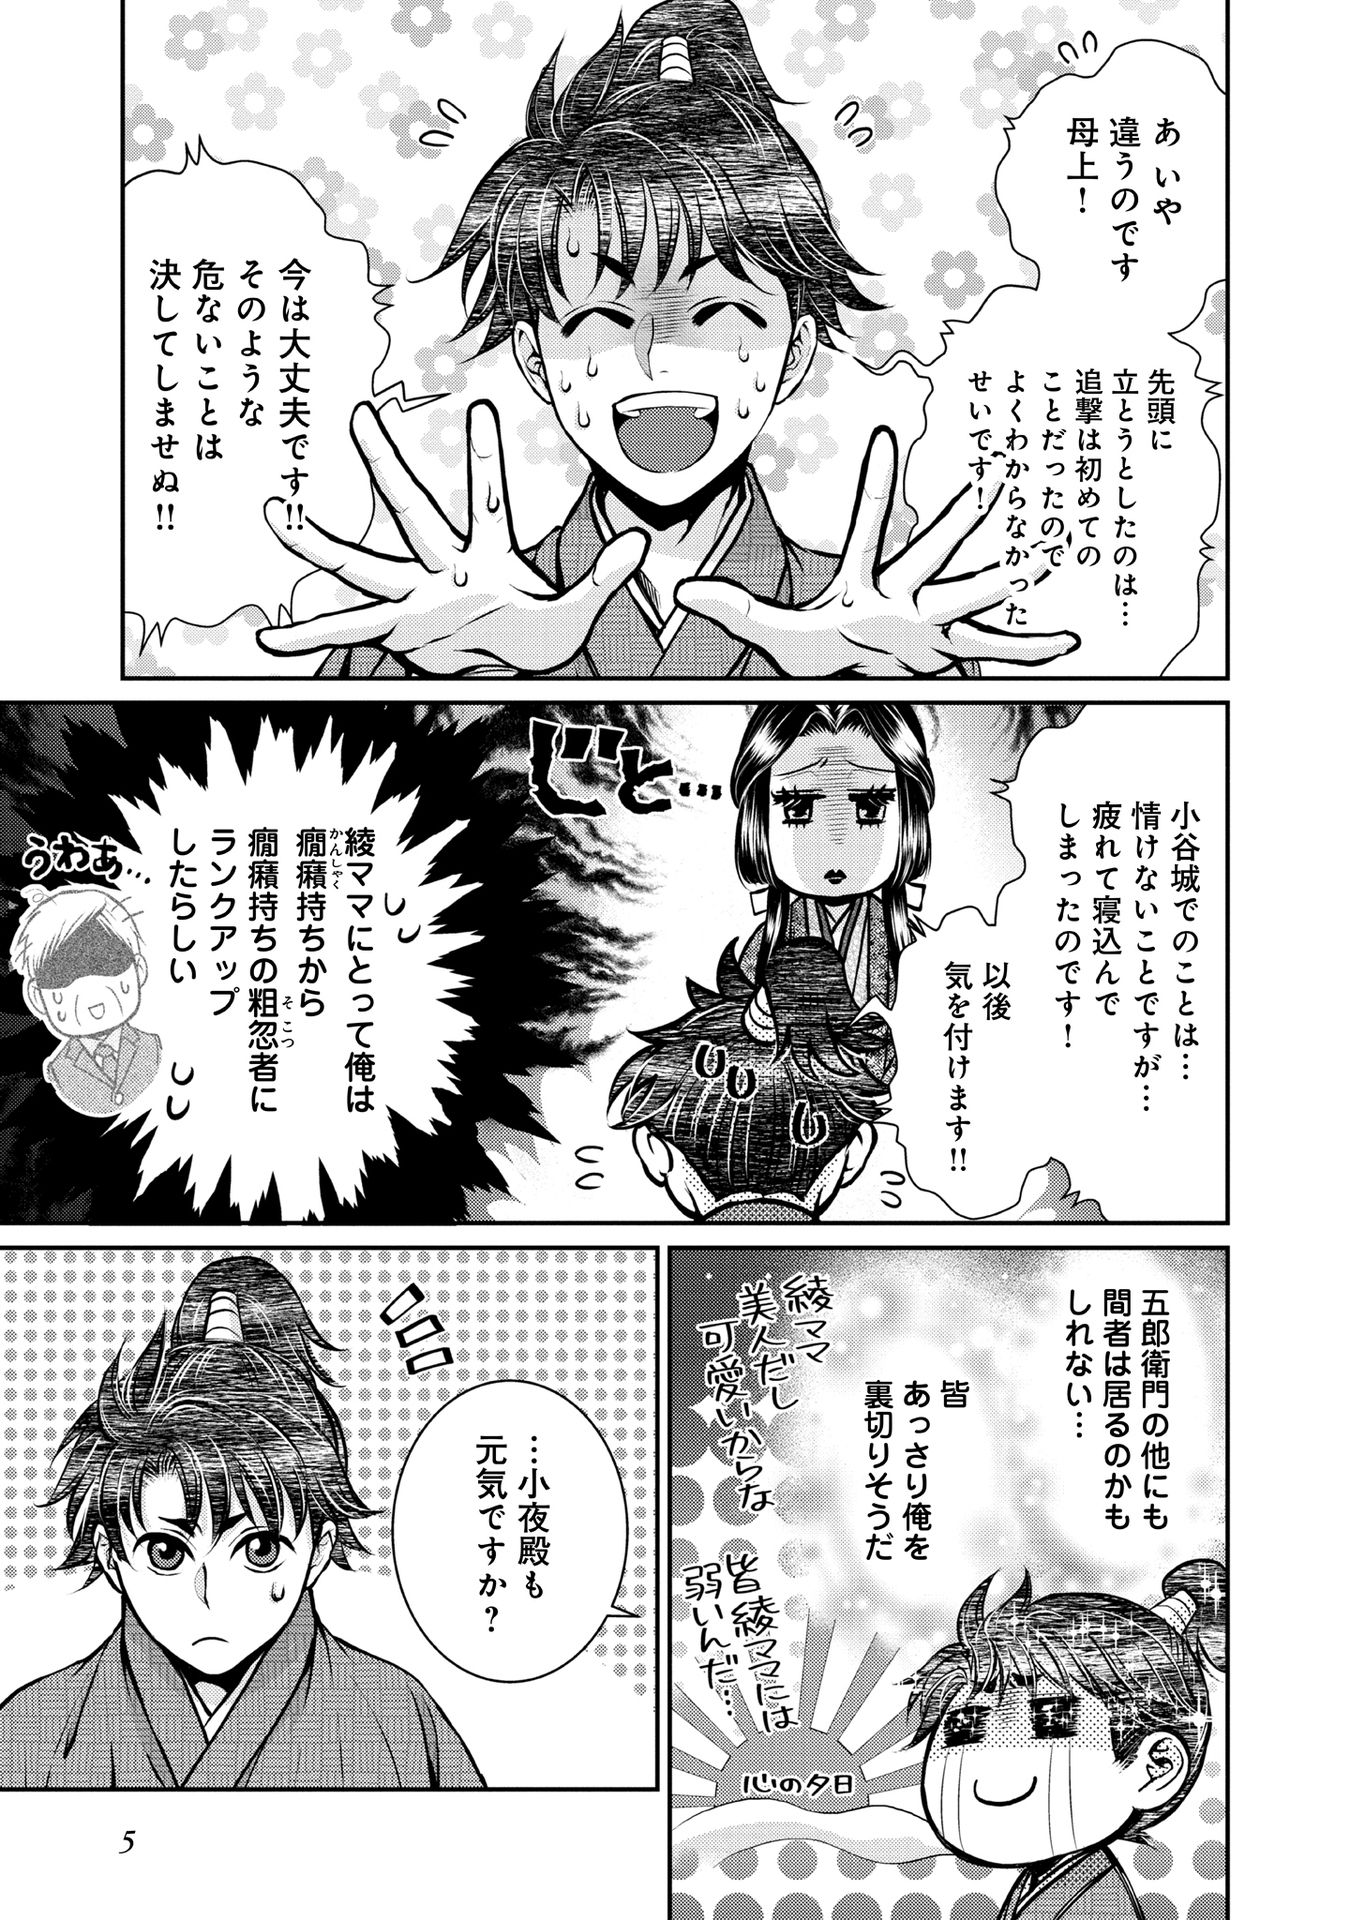 Afumi no Umi – Minamo ga Yureru Toki - Chapter 14 - Page 4